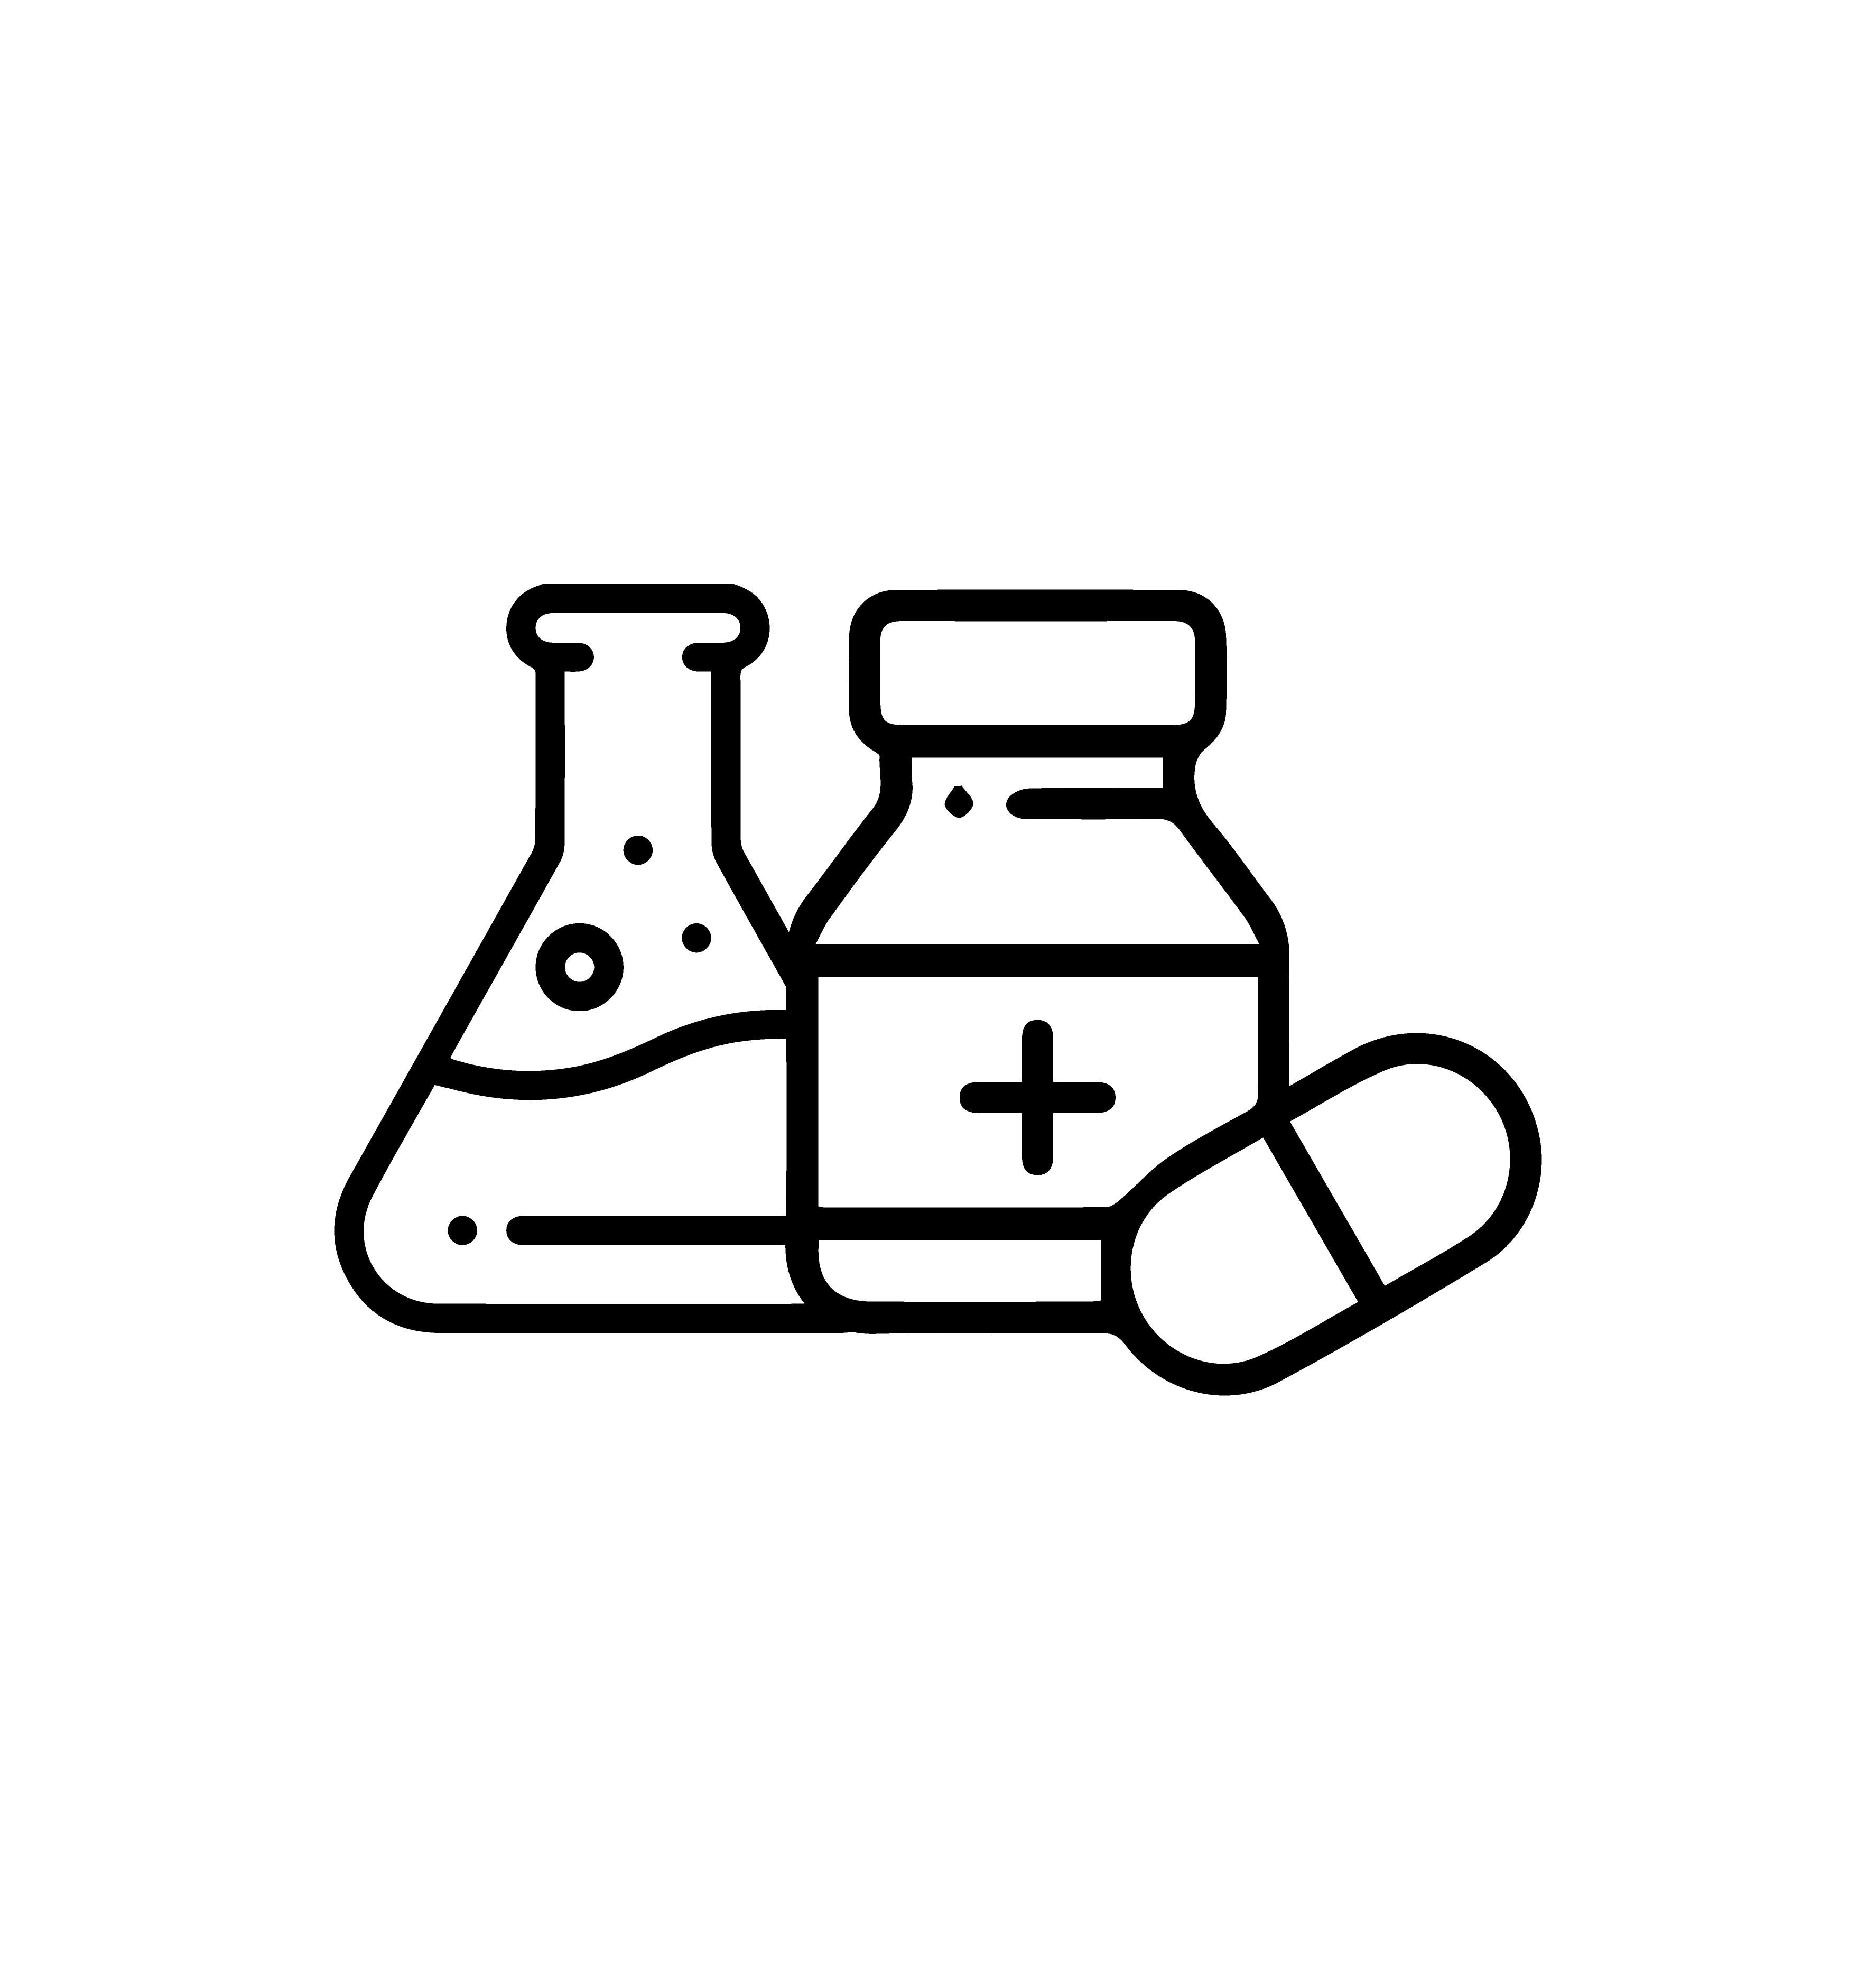 Kimya/İlaç Sektörü